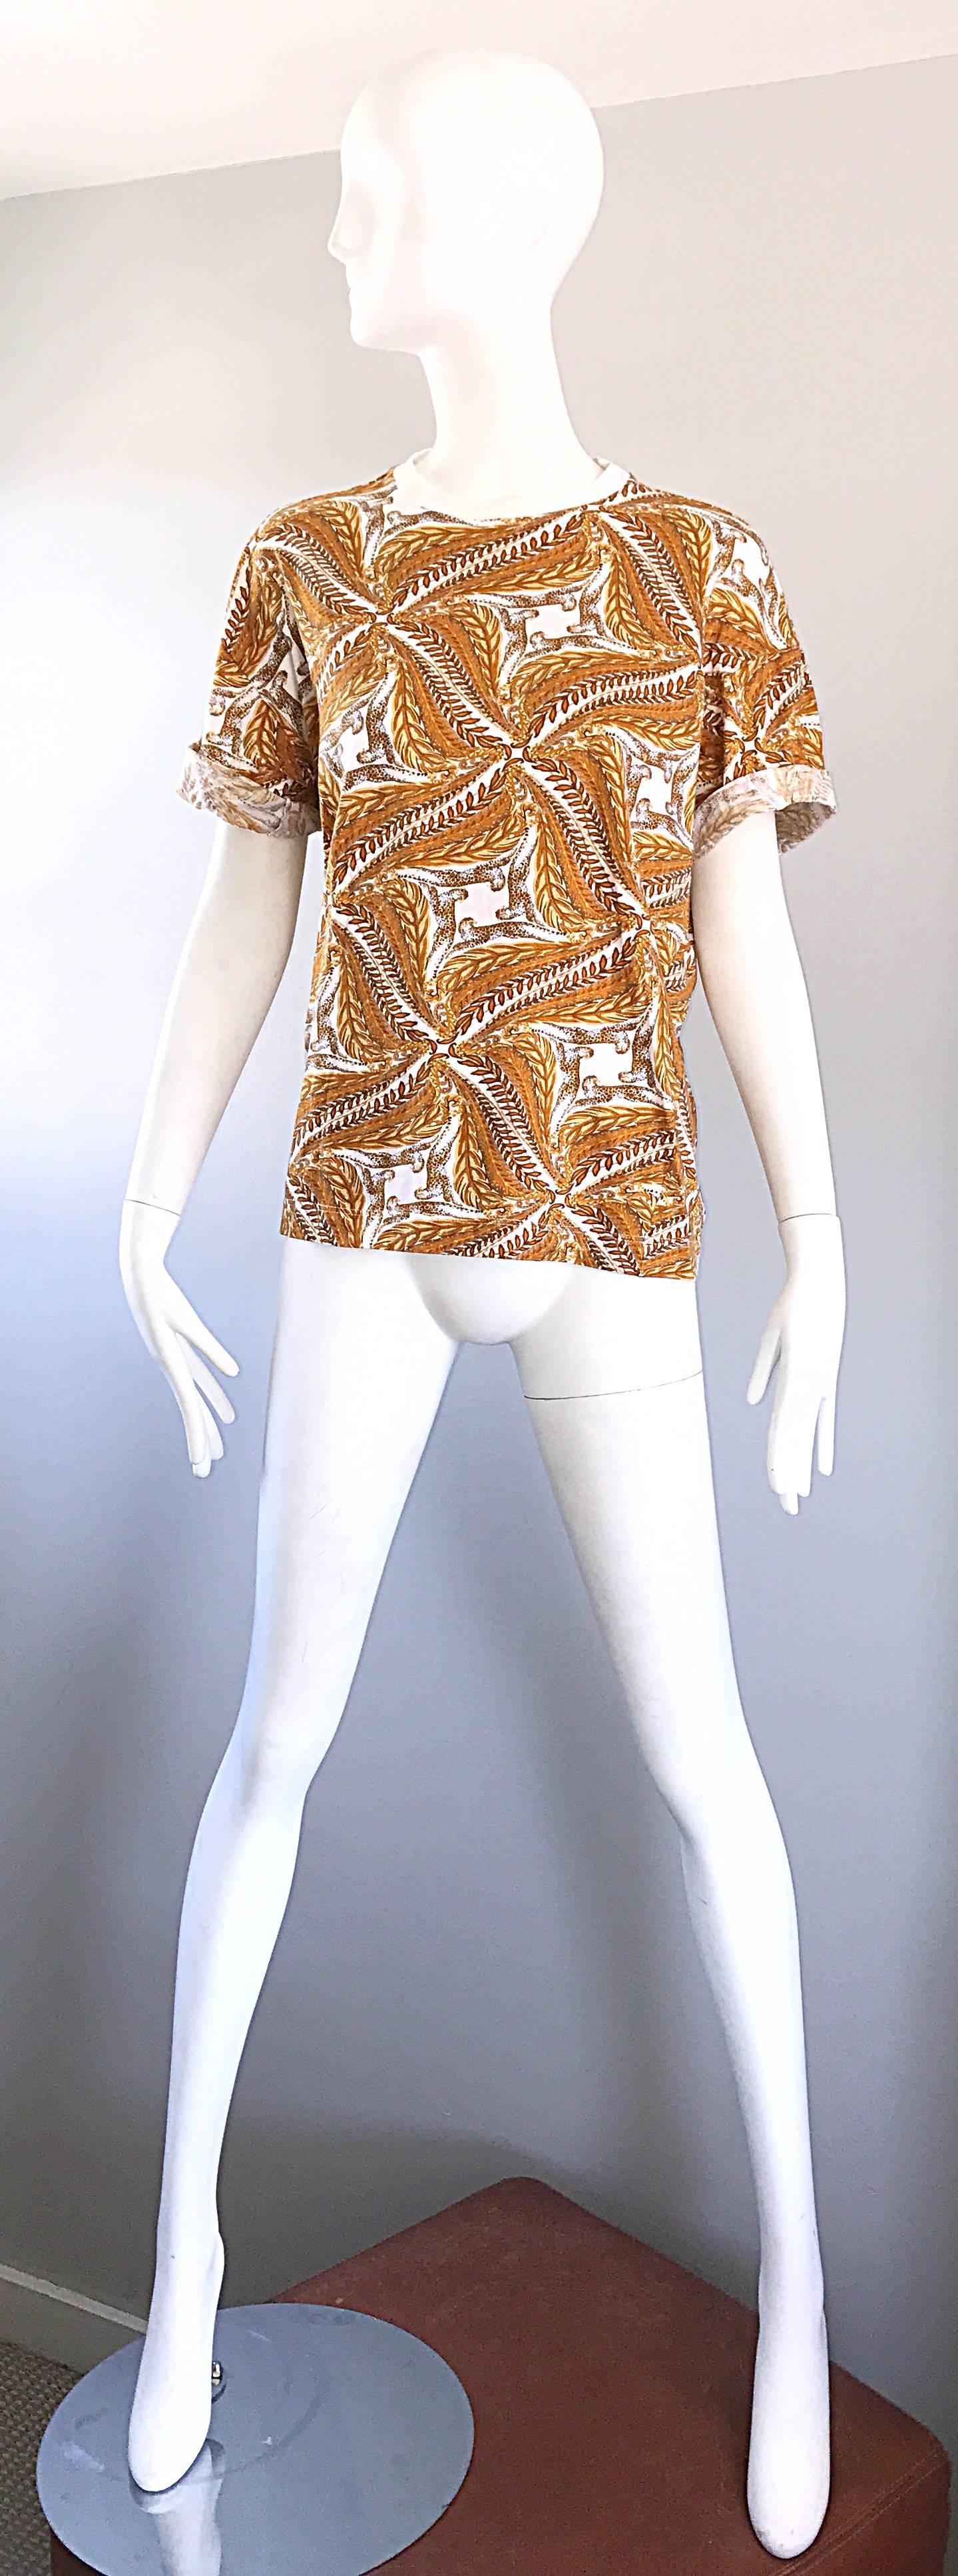 Chic t-shirt vintage SALVATORE FERRAGOMO en coton imprimé guépard/léopard et blé à manches courtes ! Comprend des imprimés symétriques en or, jaune, marigold et blanc. Les manches peuvent être portées retroussées pour un look plus tendance. Idéal